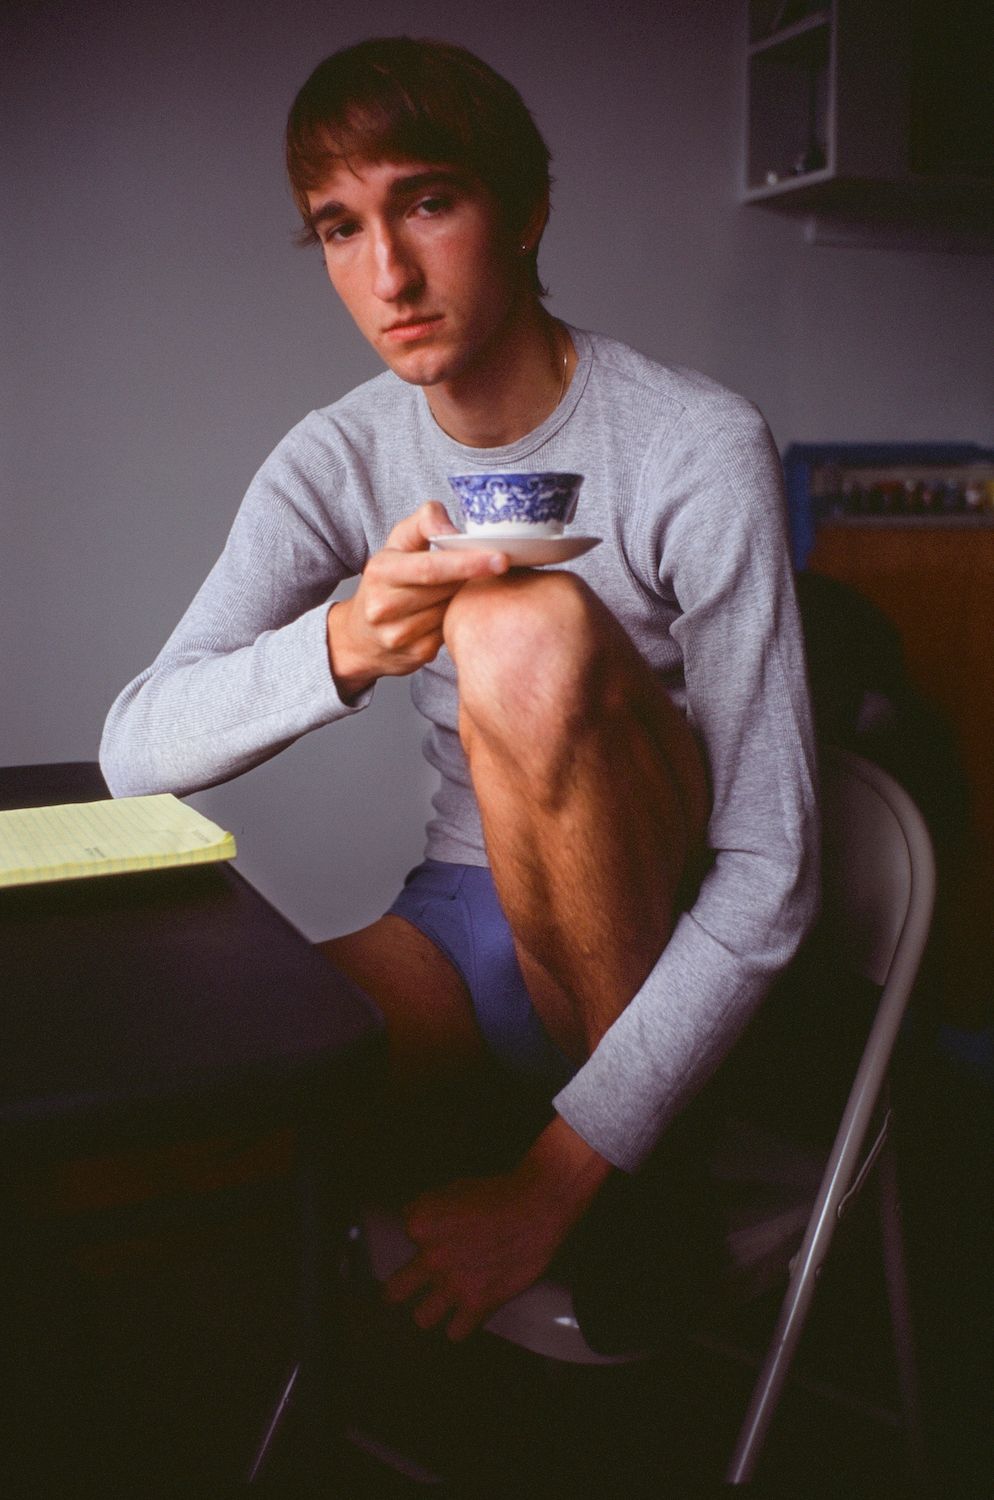 Jordan Weitzman, "Francis with tea cup"